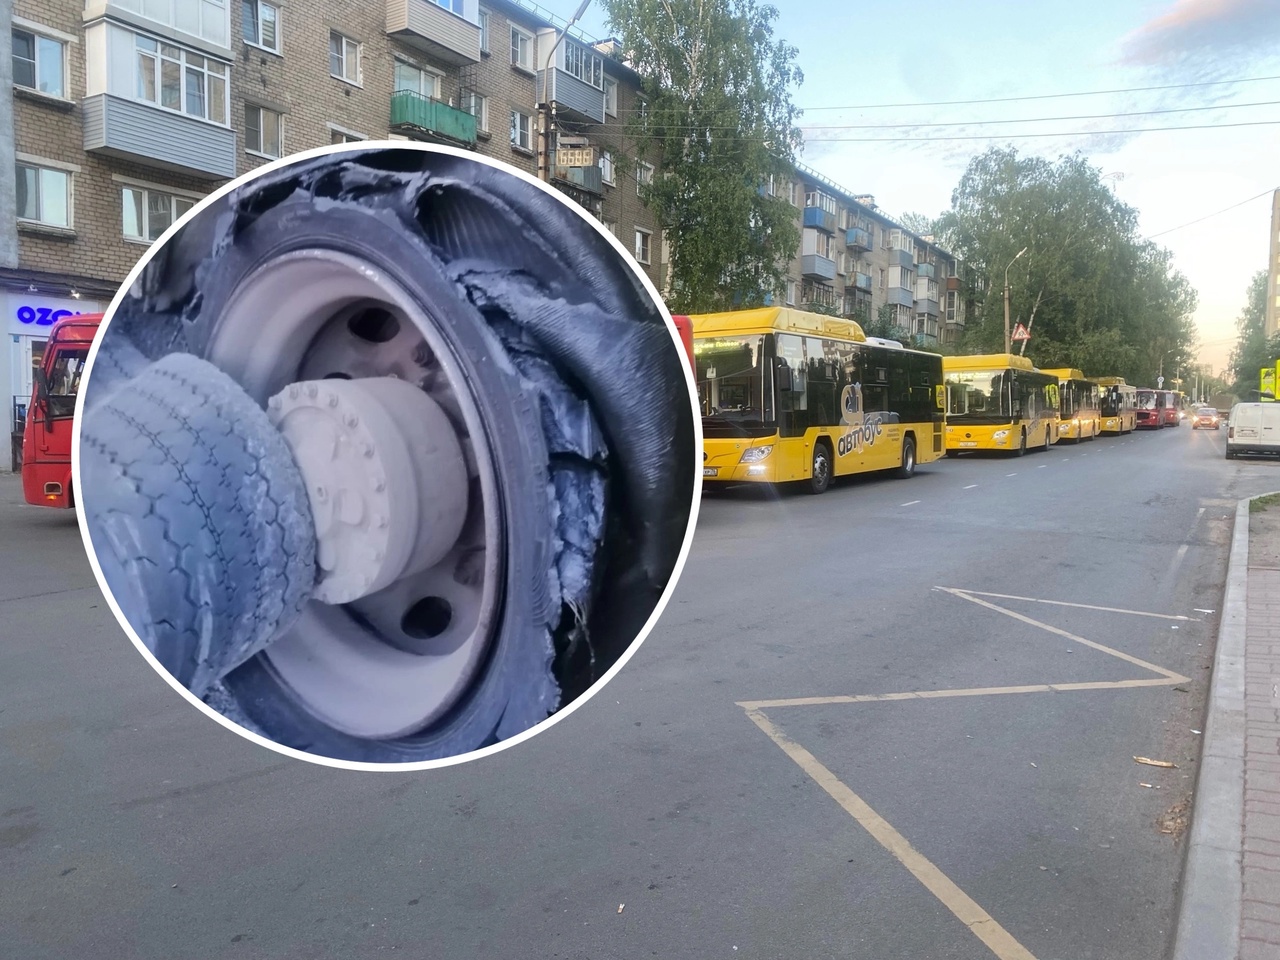 "Блок загорелся": на ярославский транспорт жалуются жители области